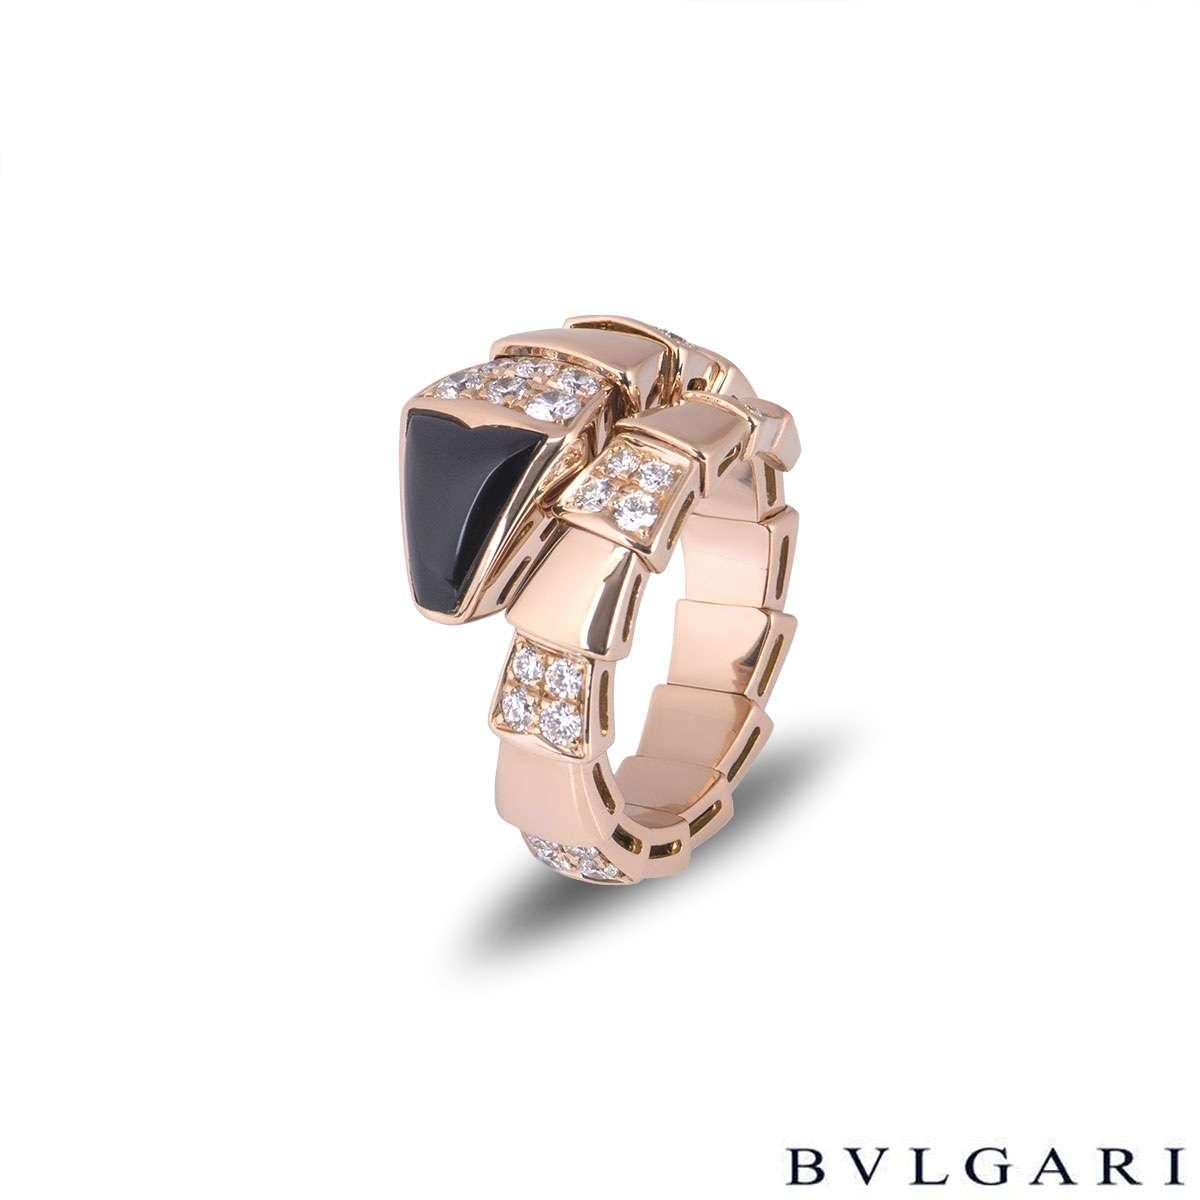 Ein Bvlgari-Ring aus 18 Karat Roségold mit Onyx und Diamanten aus der Kollektion Serpenti. Der Ring hat die Form einer Schlange, die sich mit einem Onyxkopf um den Finger wickelt und abwechselnd hochglanzpolierte, flexible Übergänge und